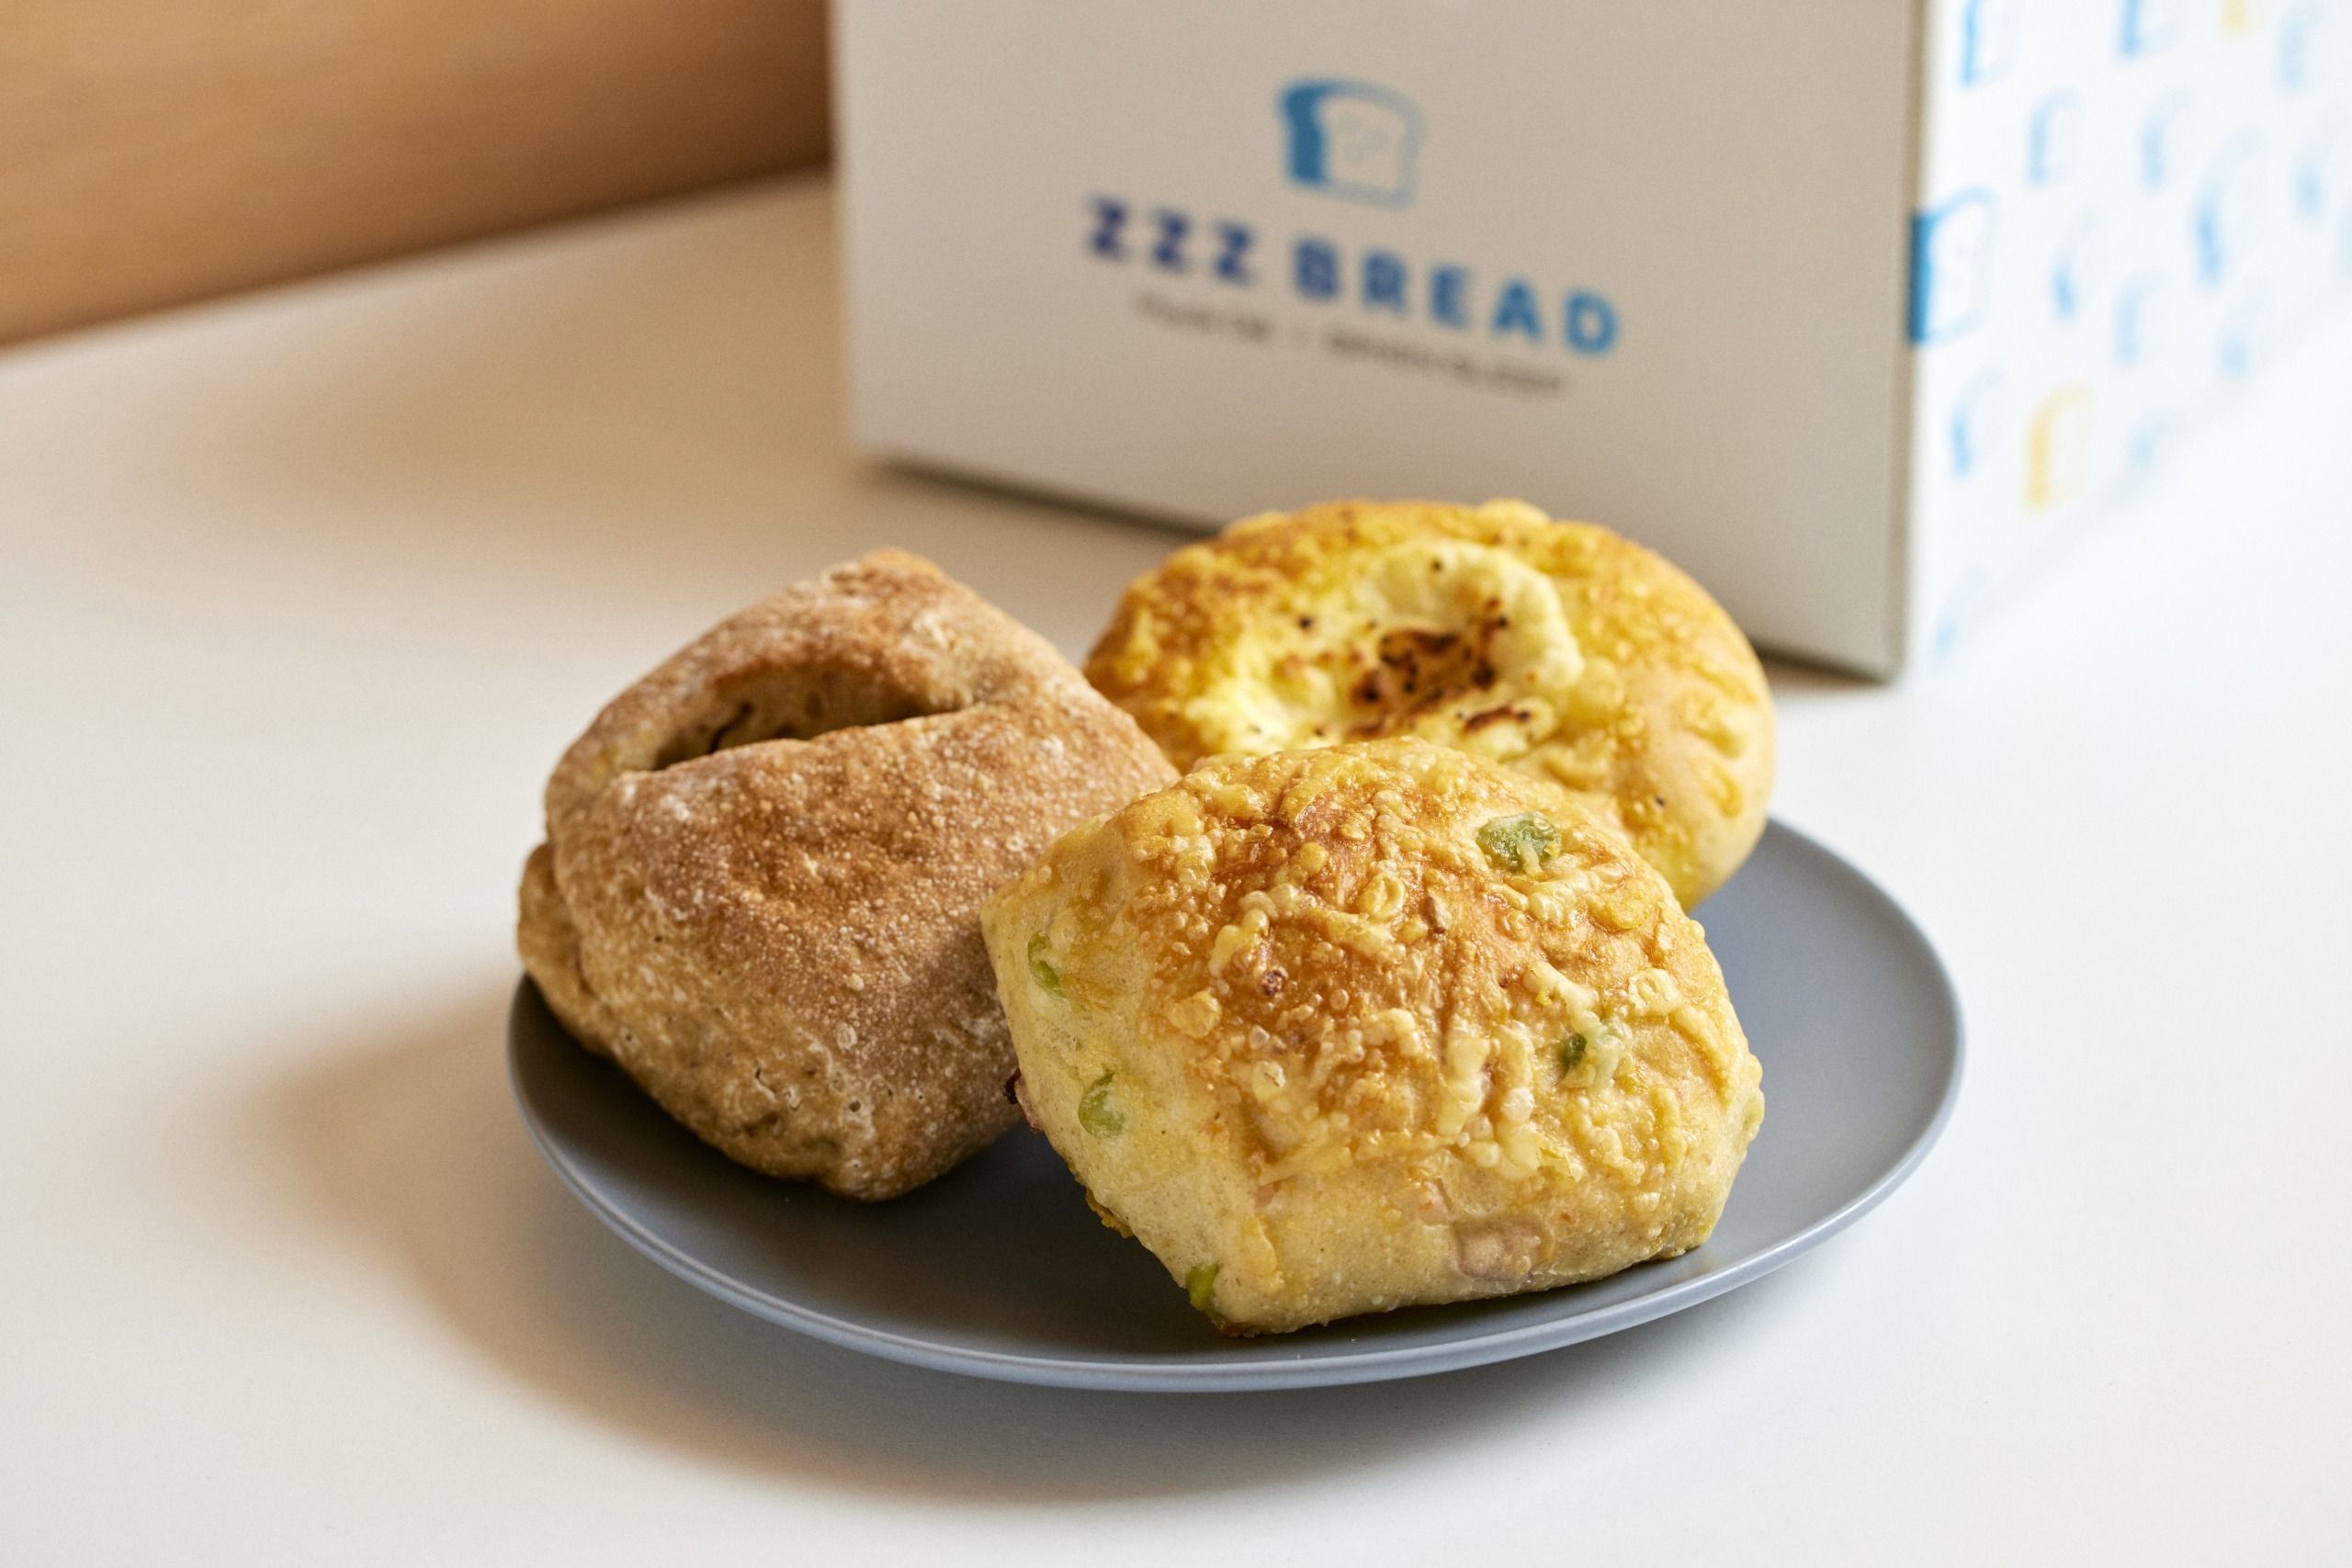 朝から1日の終わりを考えるための朝食パン「ZZZ BREAD(ジー ブレッド）」プロジェクトが開始　#Z世代Pick